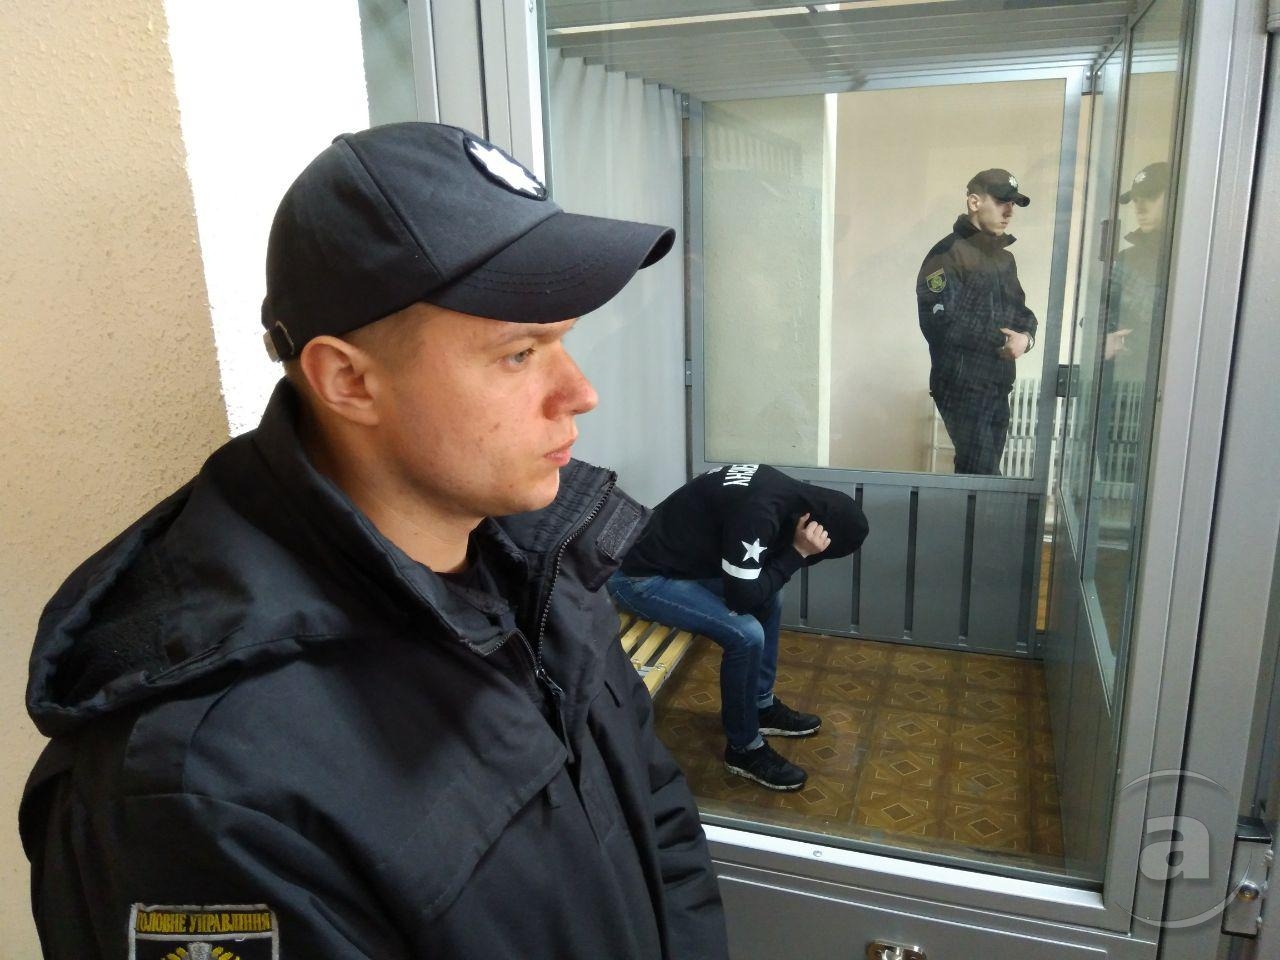 Енгибарян во время оглашения приговора. Апрель 2018 года. Фото Александра Бринзы